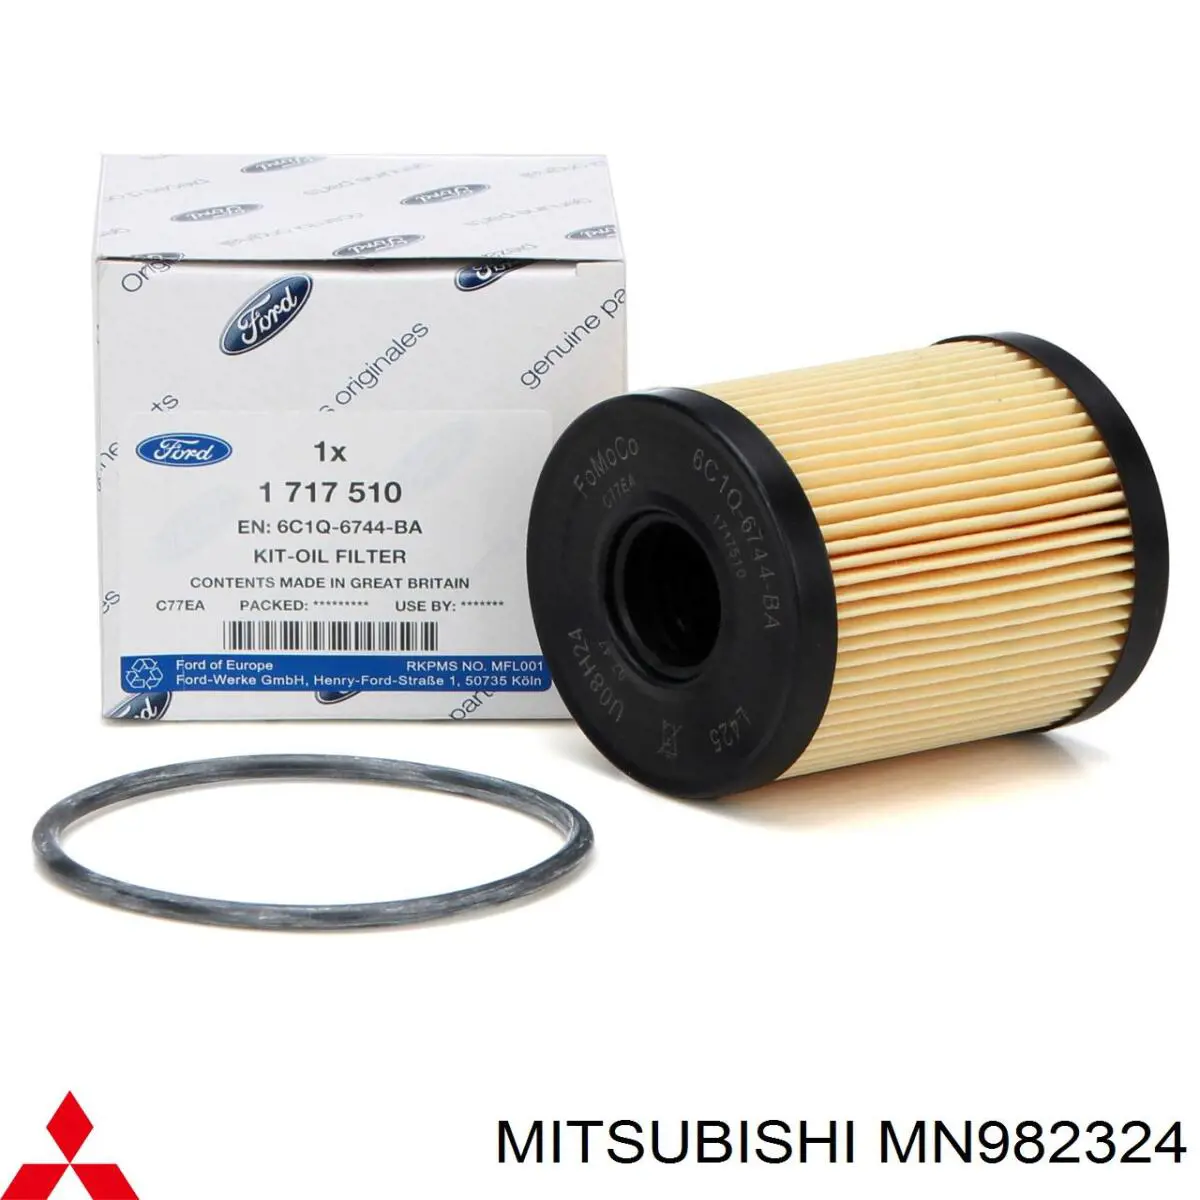 MN982324 Mitsubishi filtro de aceite